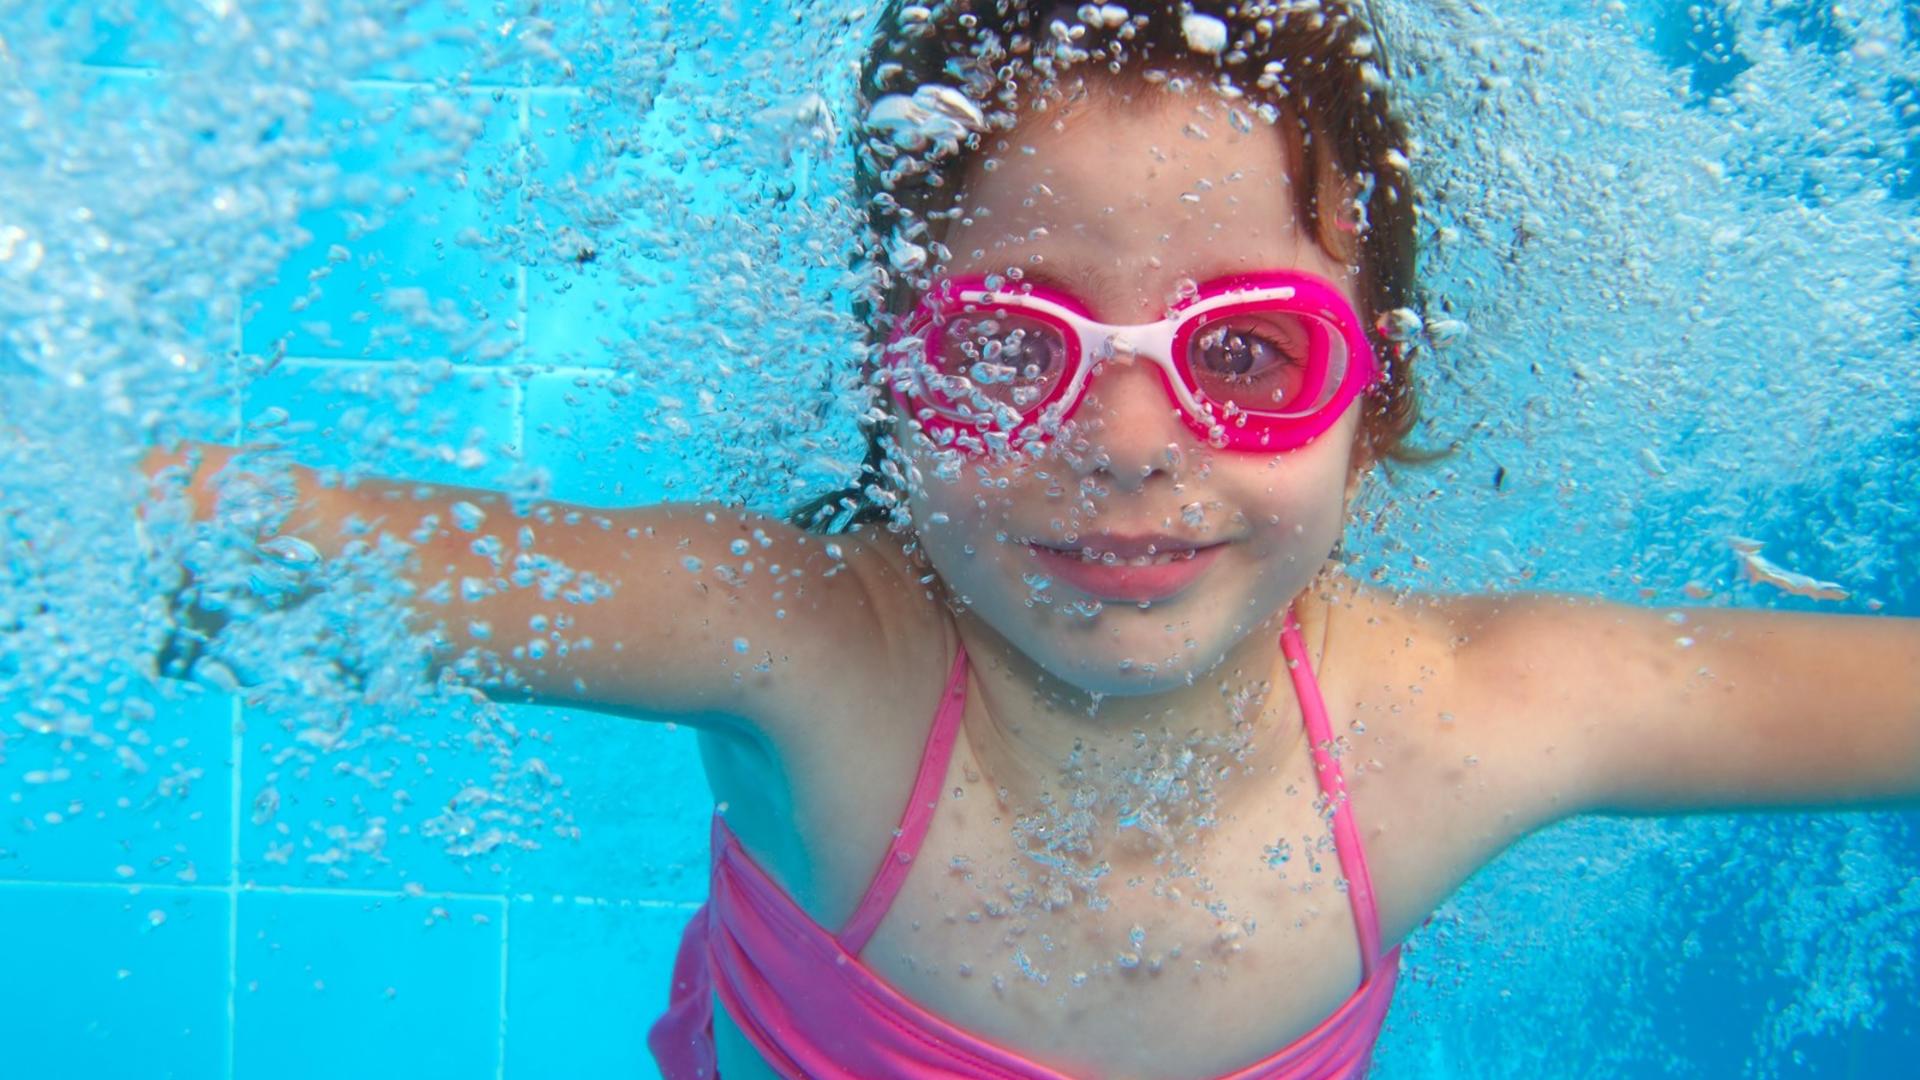 Vaalenapunaiseen uimapukuun ja uimalaseihin pukeutunut tyttö sukeltaa uima-altaassa.